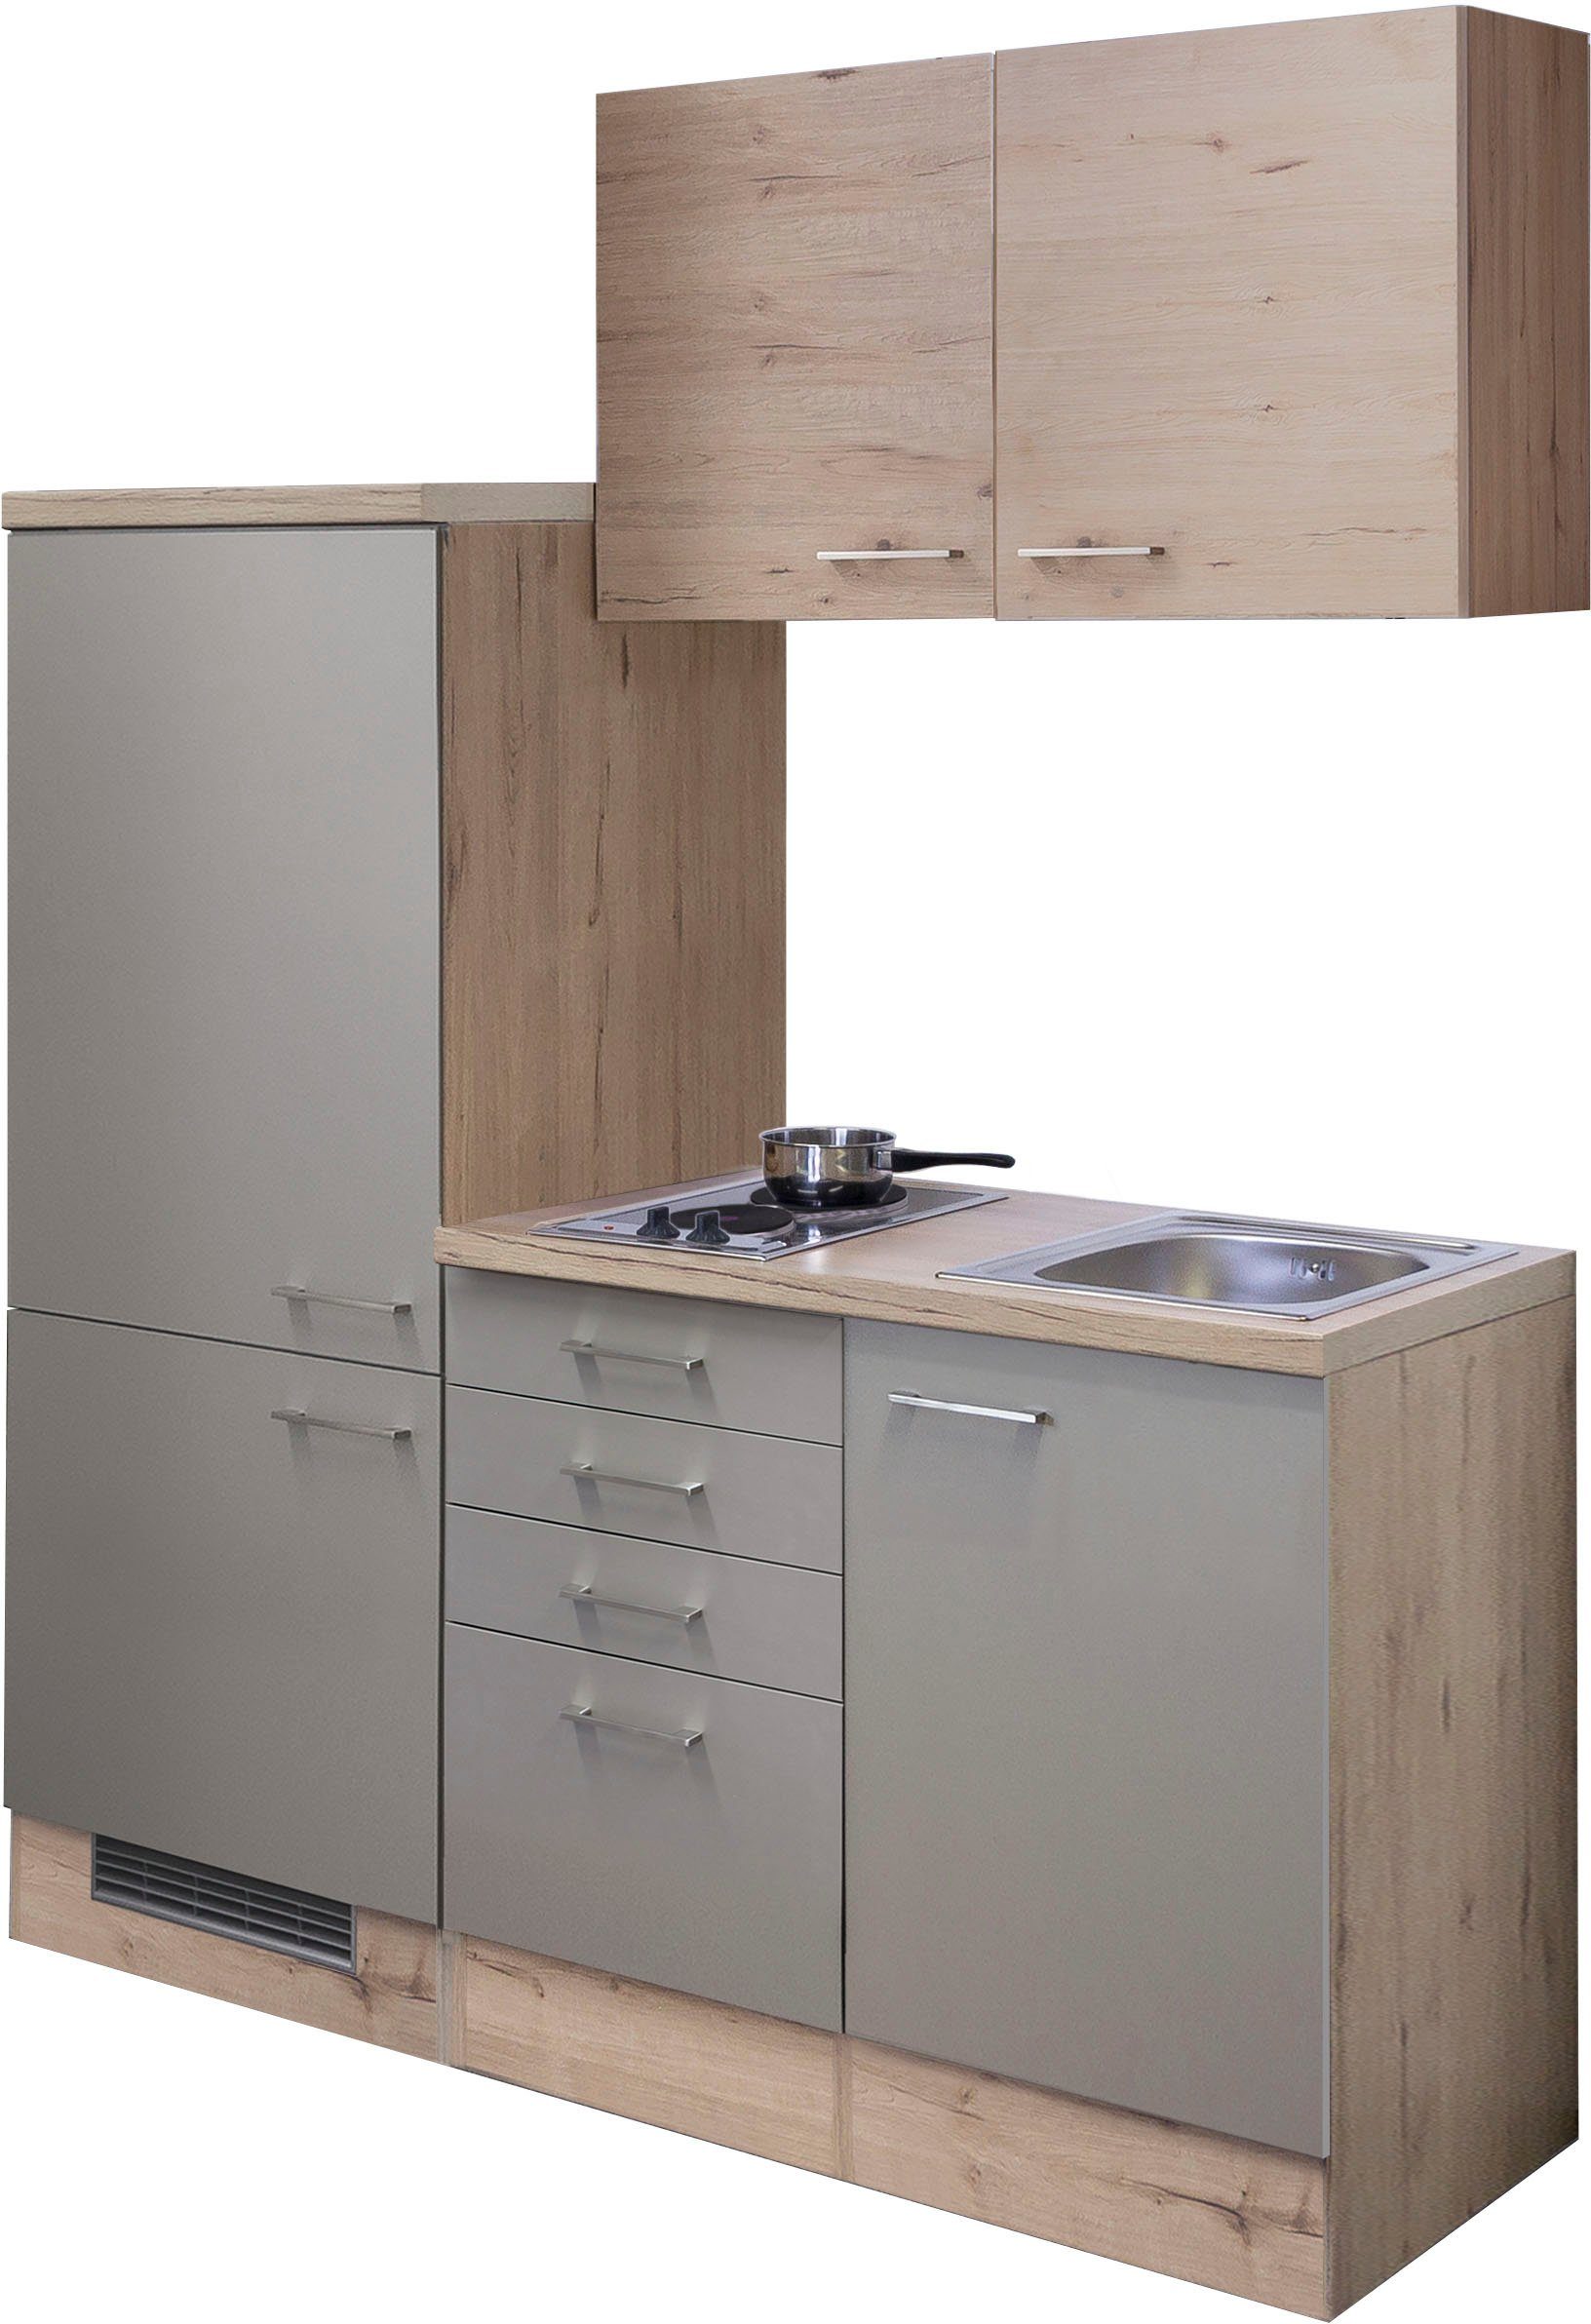 Flex-Well Küche Riva, Gesamtbreite 160 cm, mit Einbau-Kühlschrank, Kochfeld  und Spüle etc.